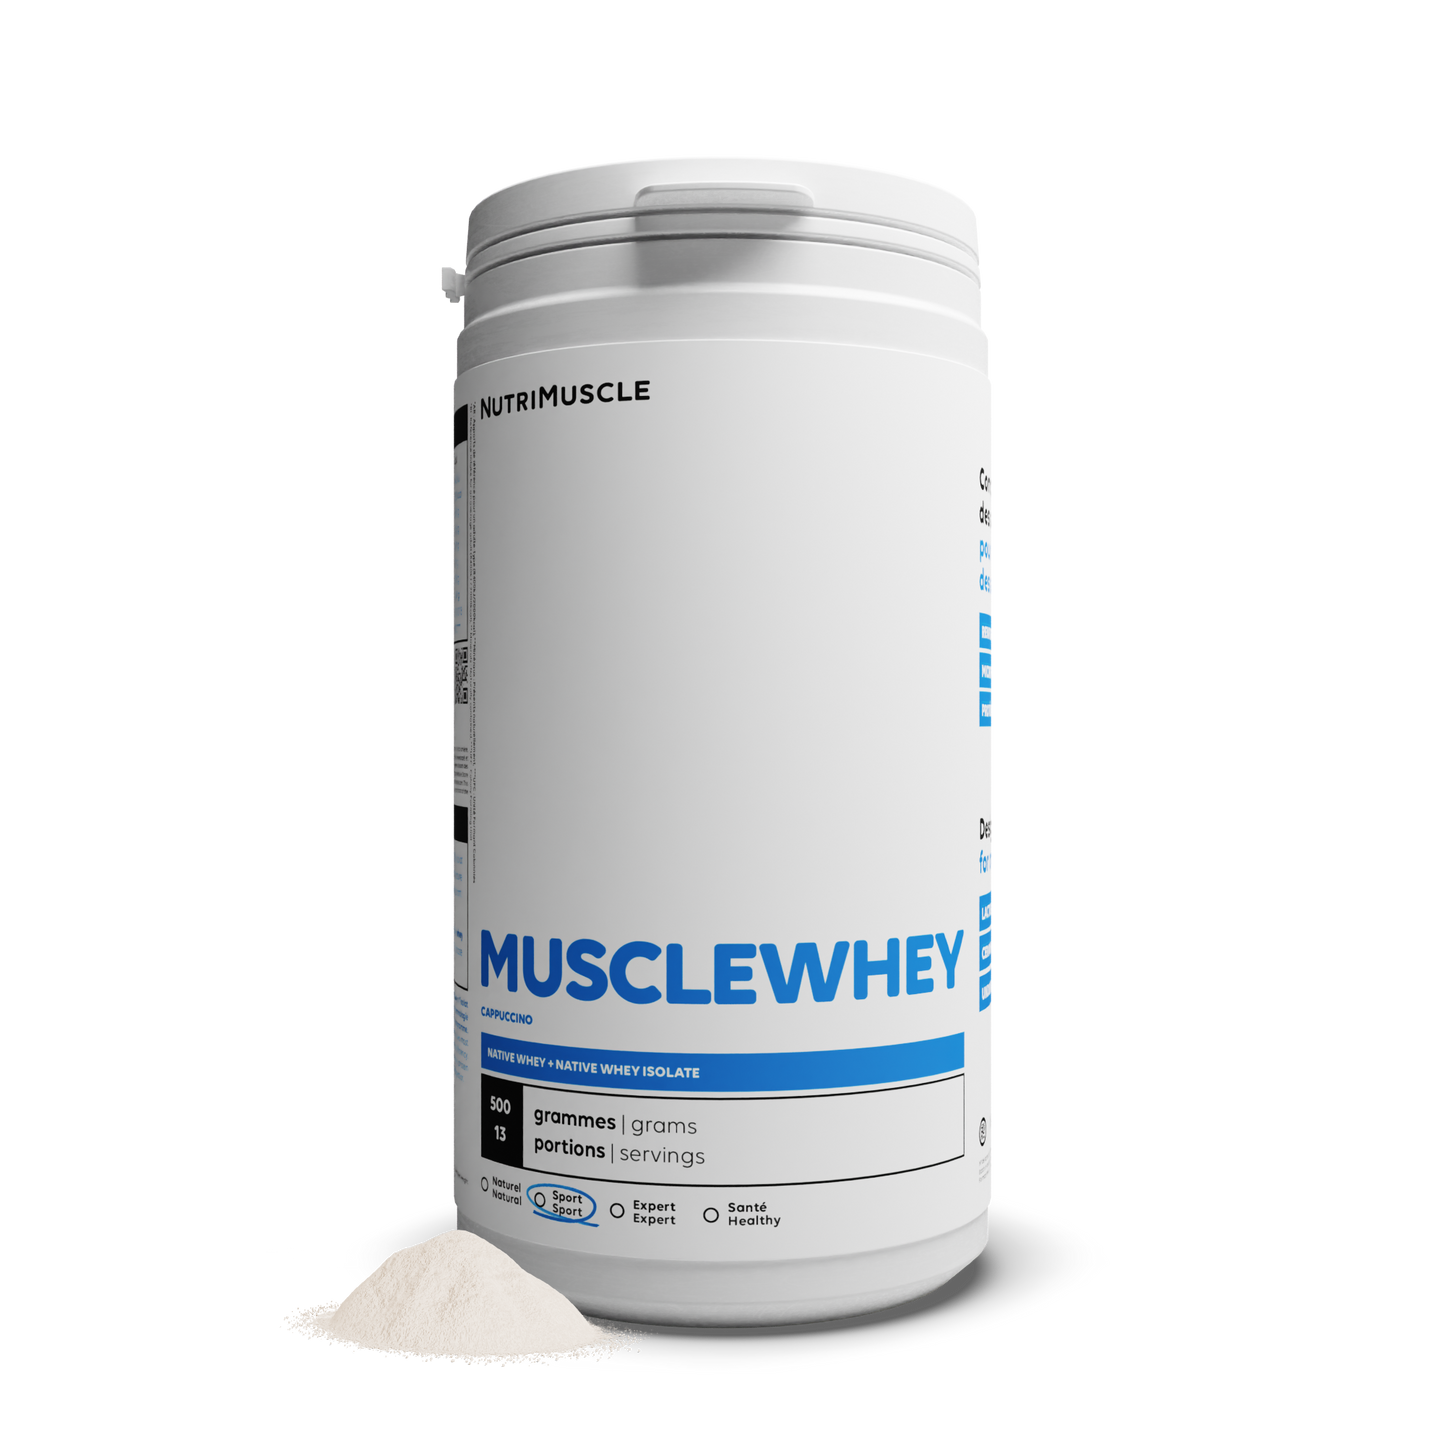 Musclewhey - Mescola la proteina